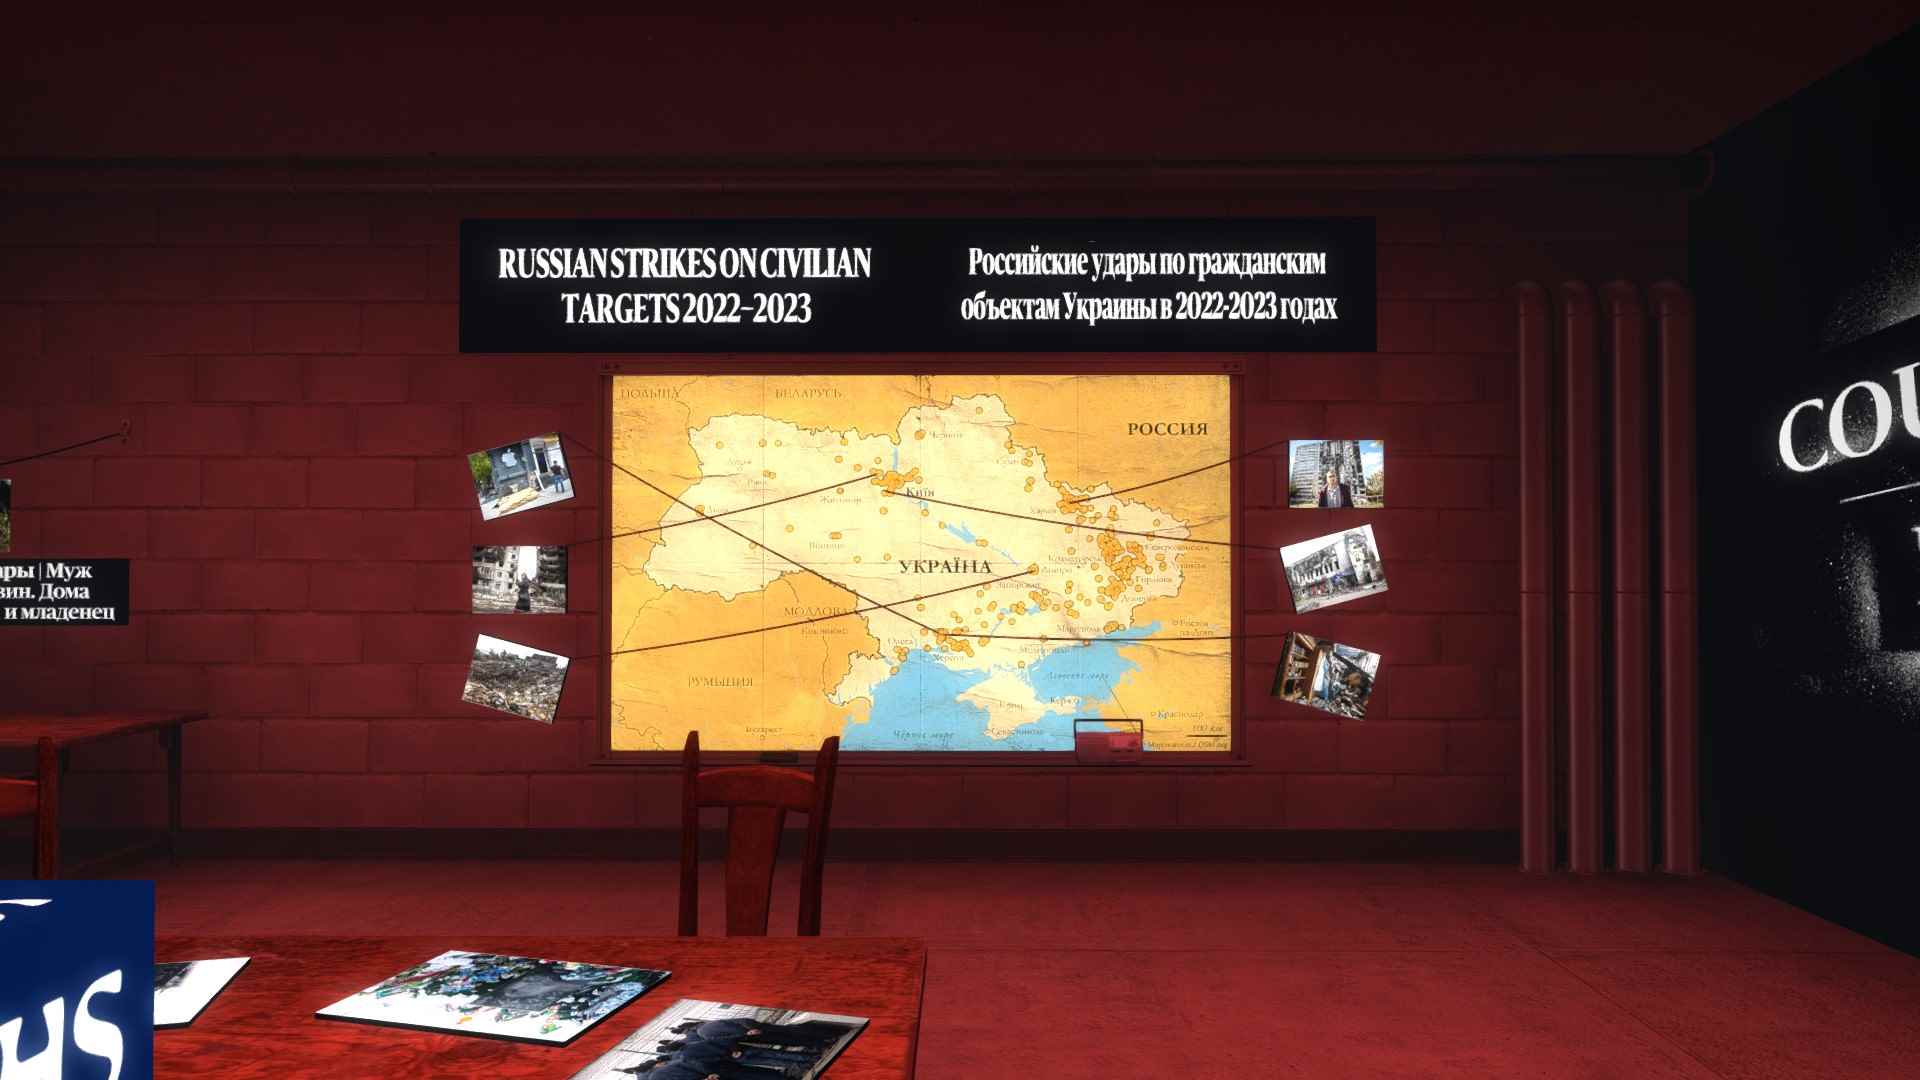 CSGO haritasının Rusya tarafından yasaklanan haberlerle dolu gizli bir odası var: Rusya'nın Ukrayna'yı işgali hakkında bilgi paylaşmak için kullanılan bir CSGO haritası